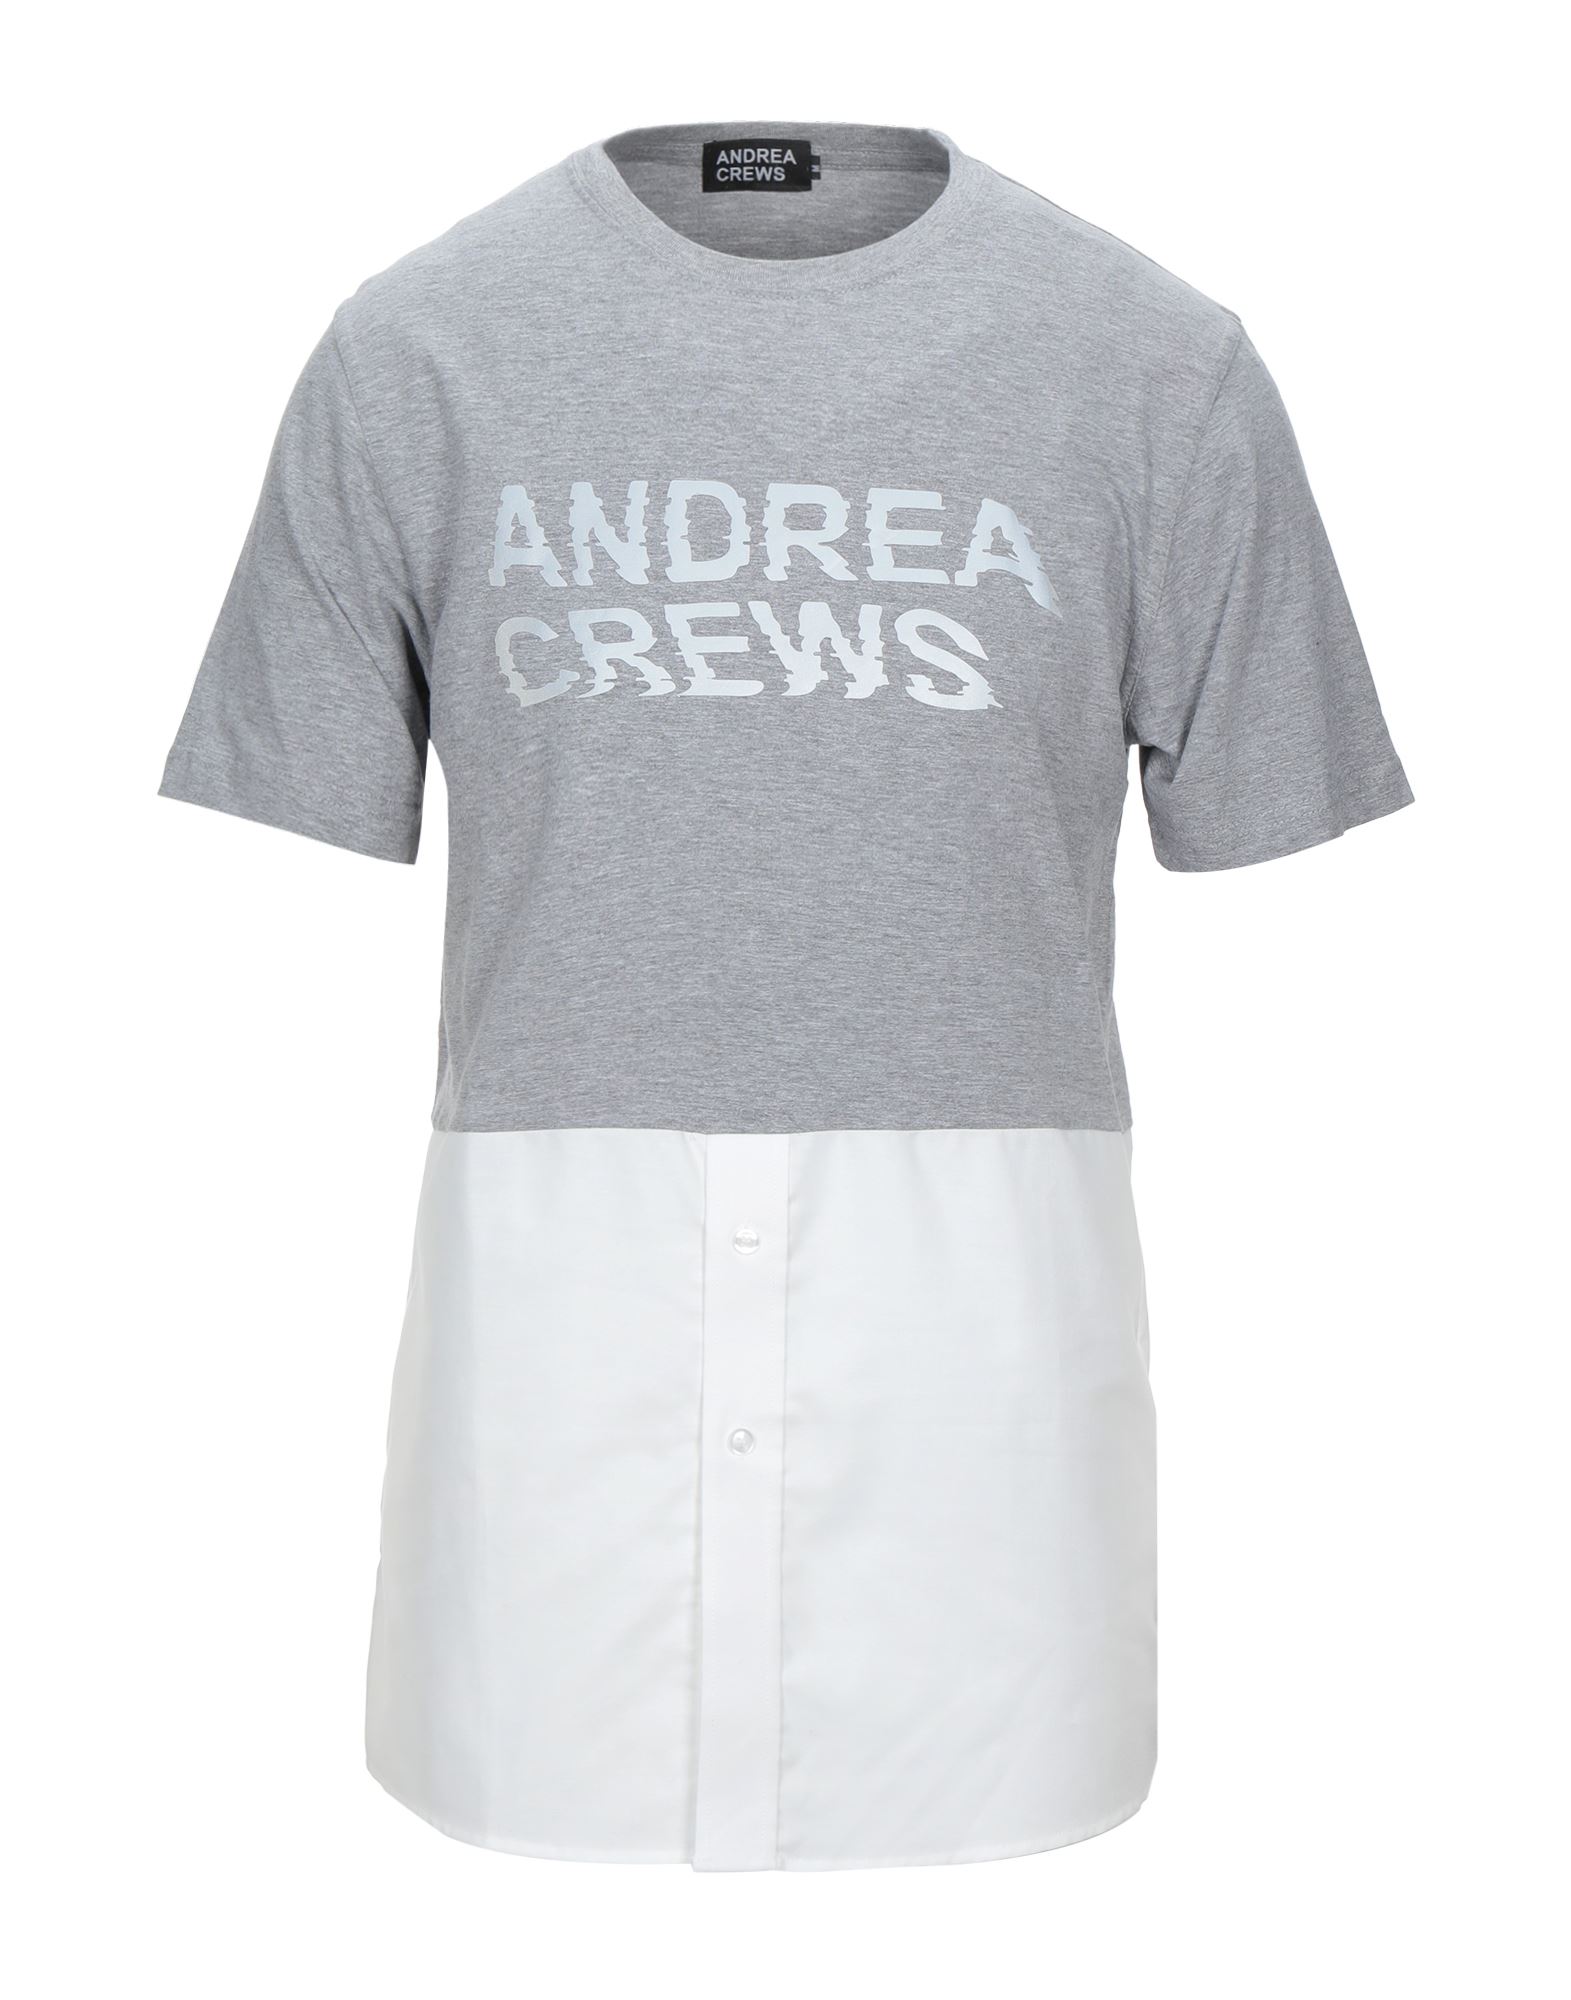 ANDREA CREWS T-shirts